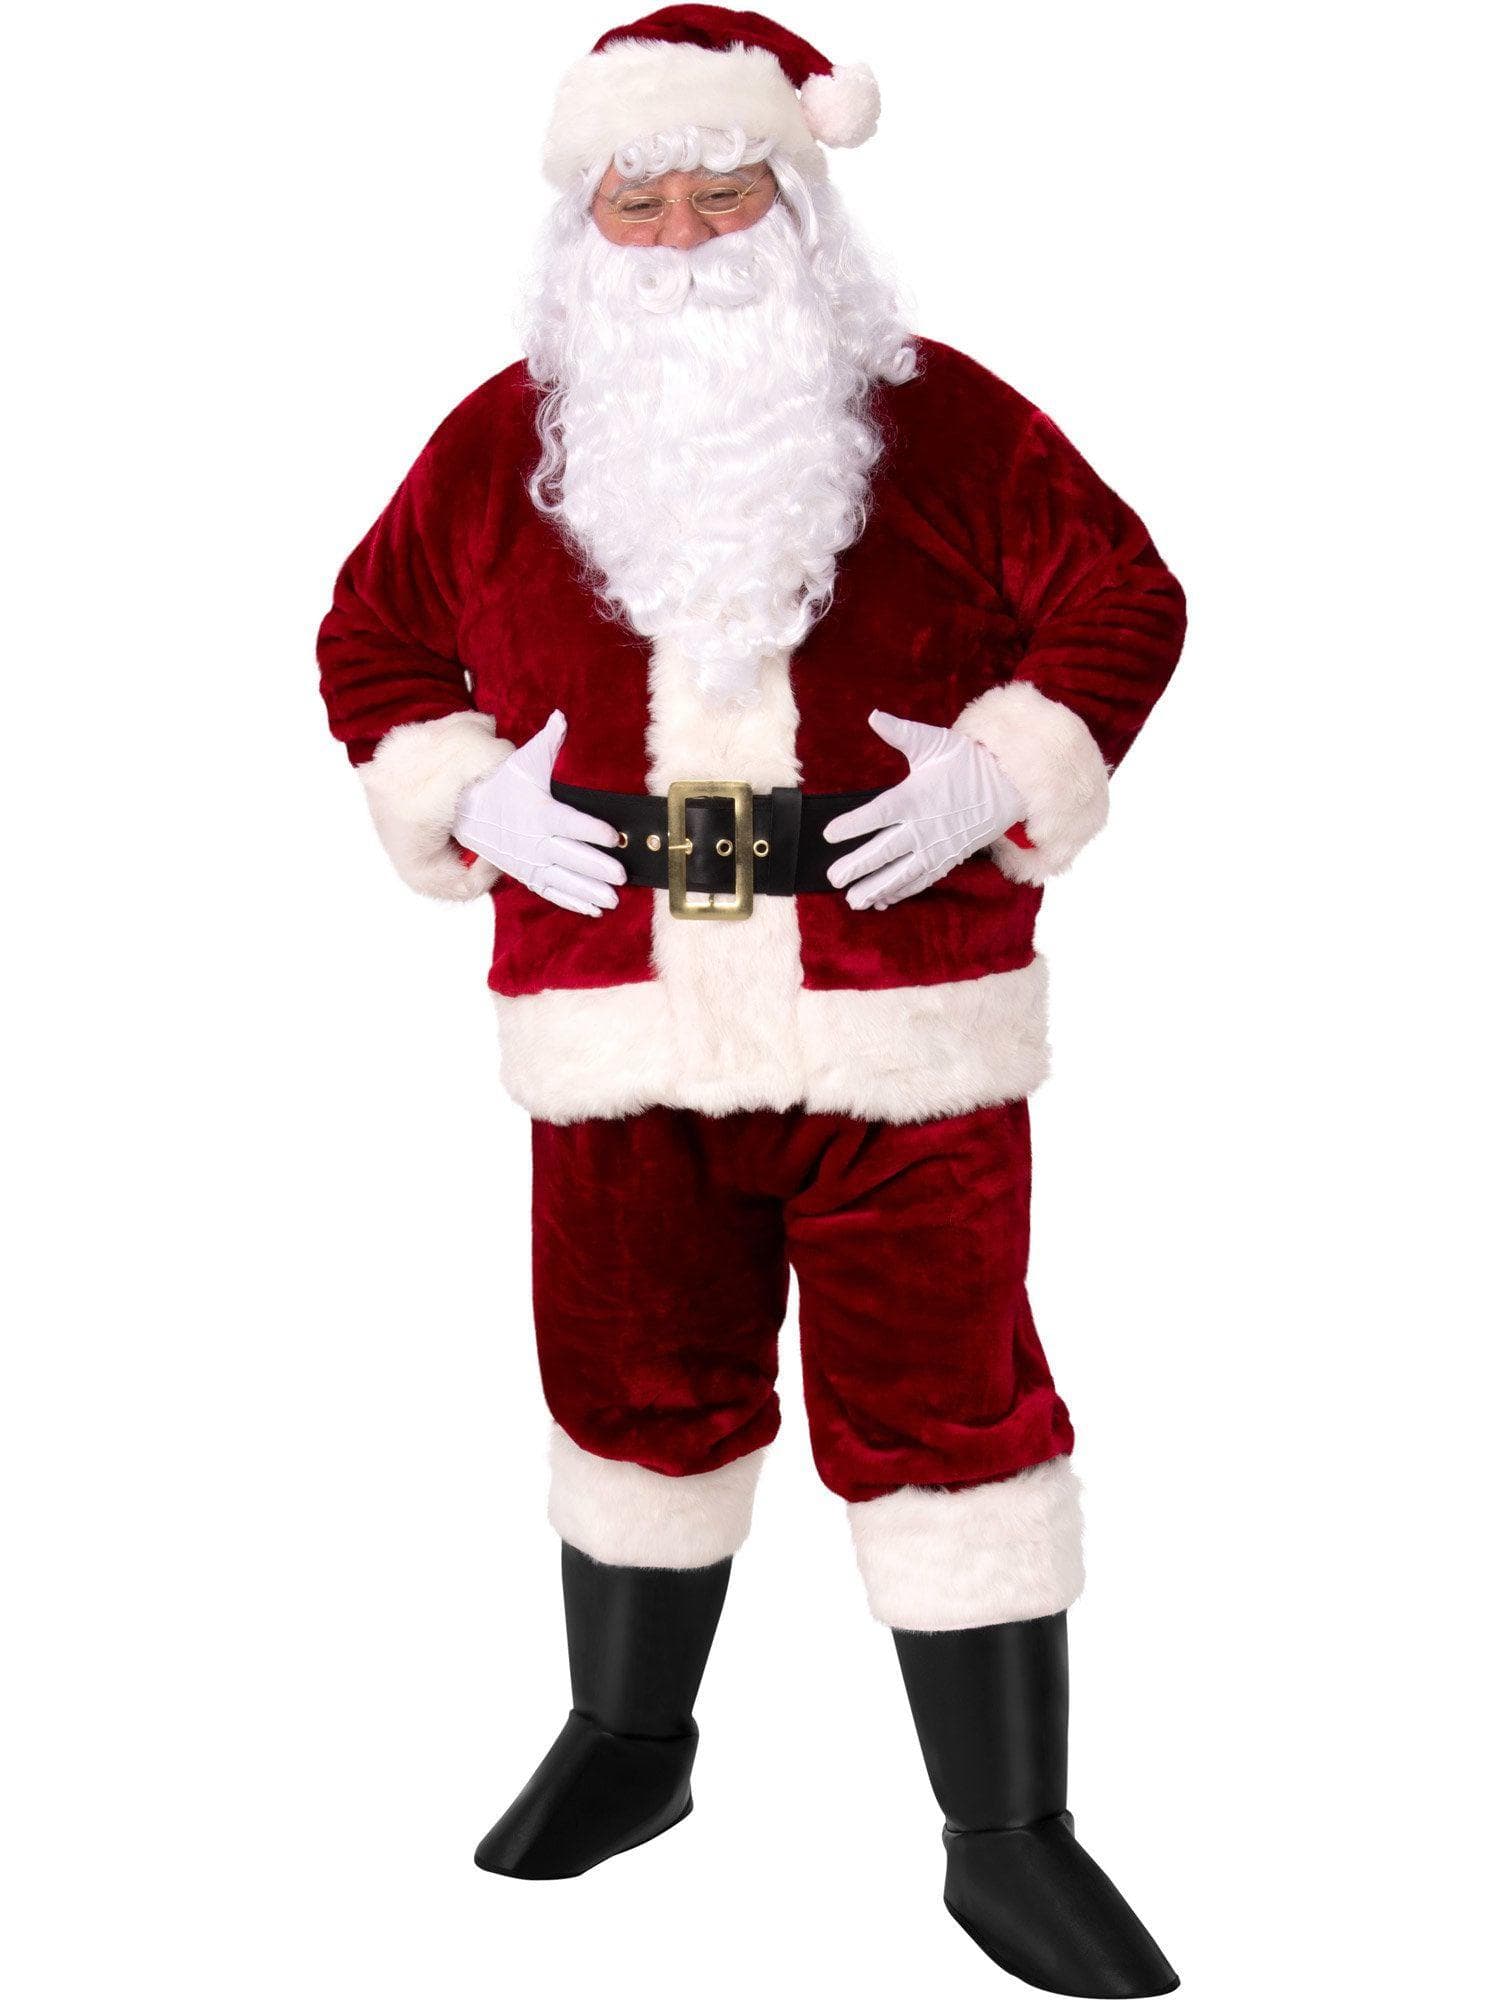 Adult Crimson Imperial Plush Santa Suit Costume - costumes.com